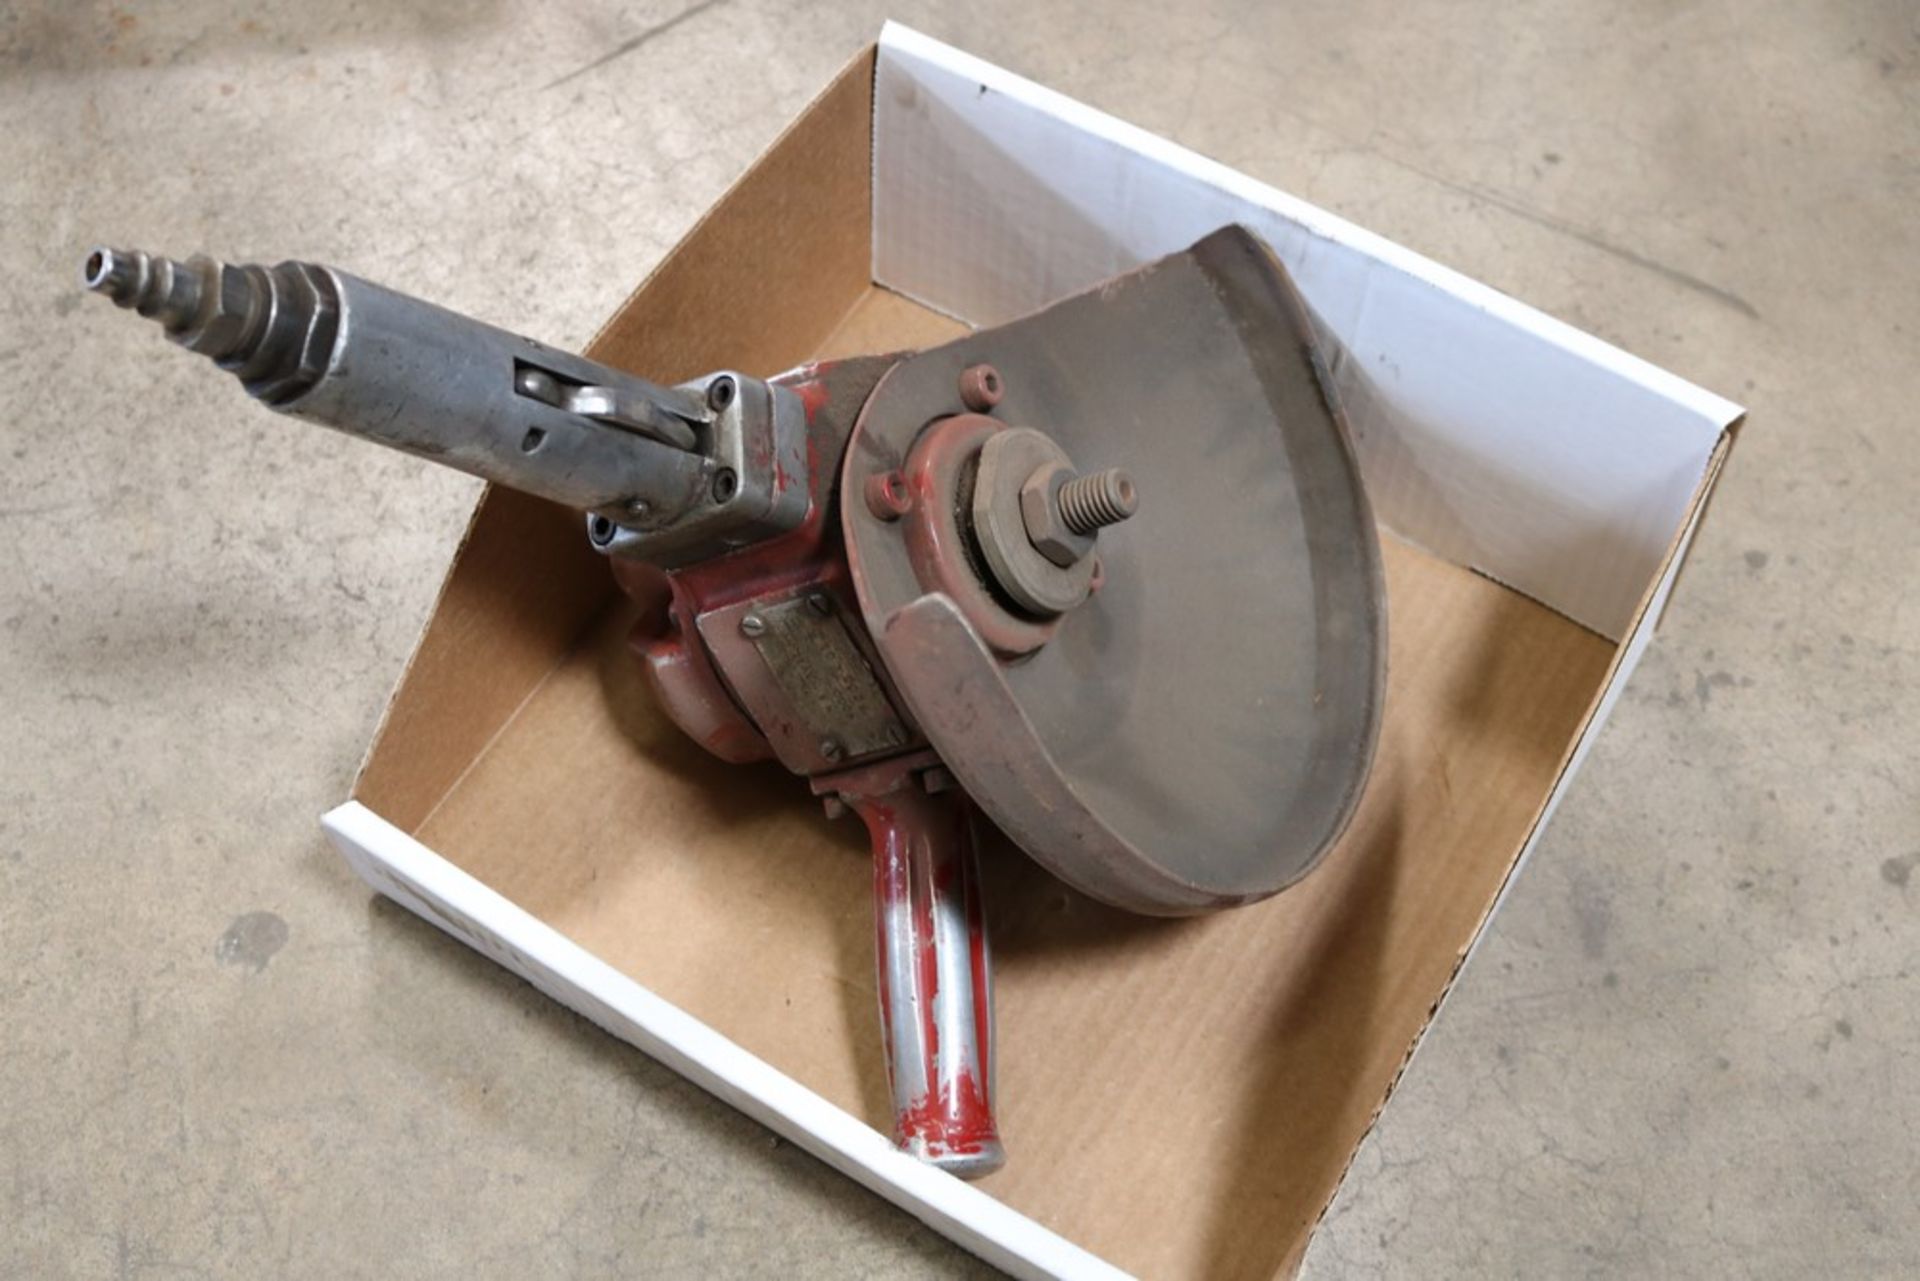 chicago pneumatic grinder/sander - Image 2 of 2